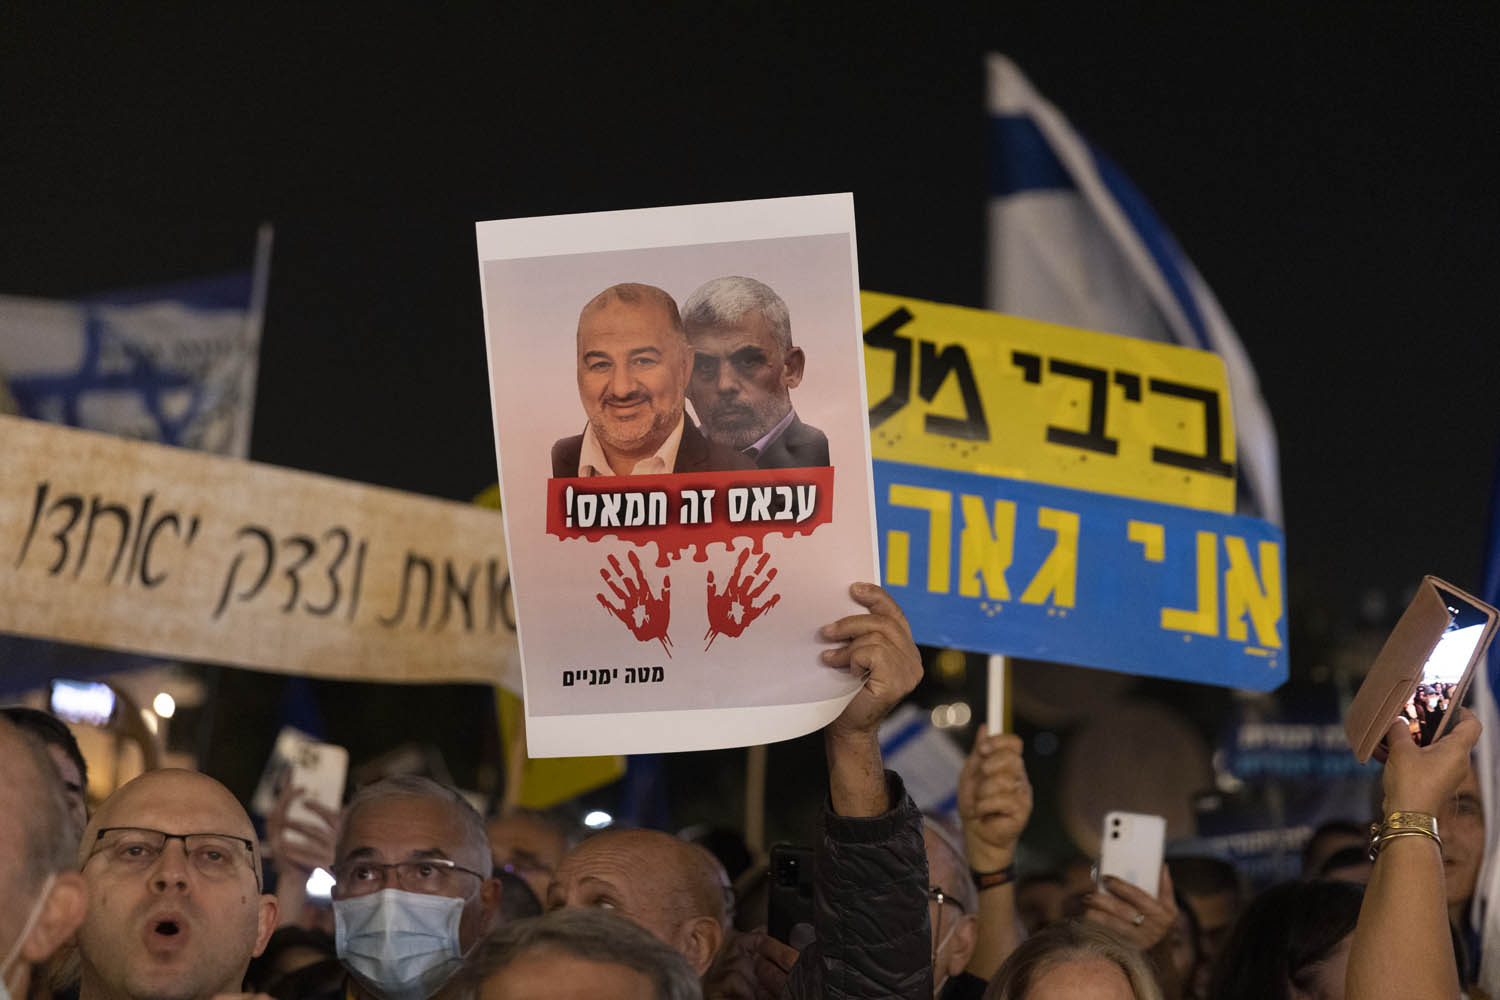 הפגנת הימין בכיכר הבימה בתל אביב, 7 בדצמבר 2021 (צילום: אורן זיו)